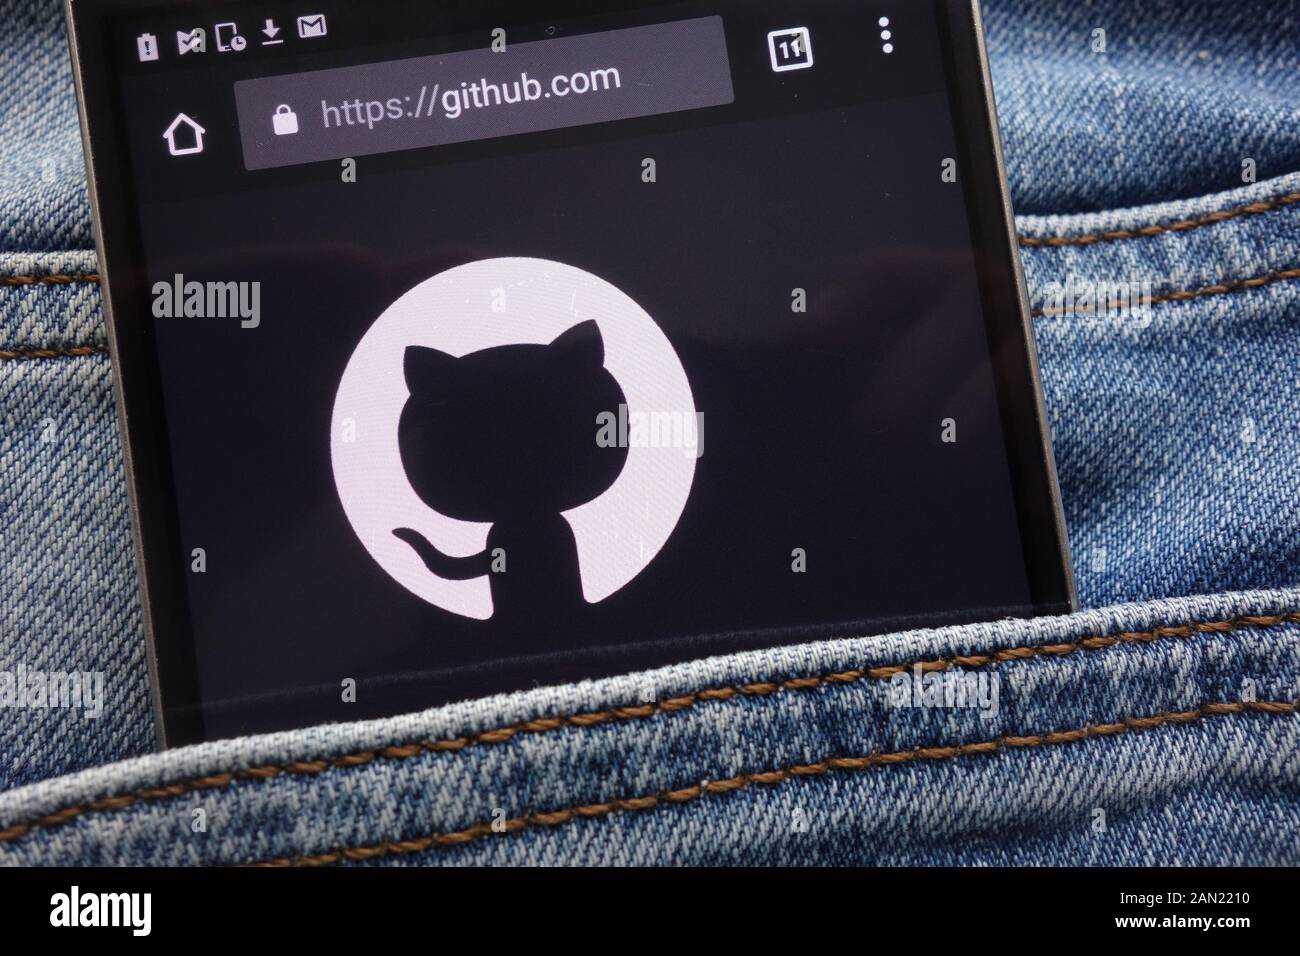 Site web affiché sur smartphone GitHub cachés dans la poche de jeans Banque D'Images